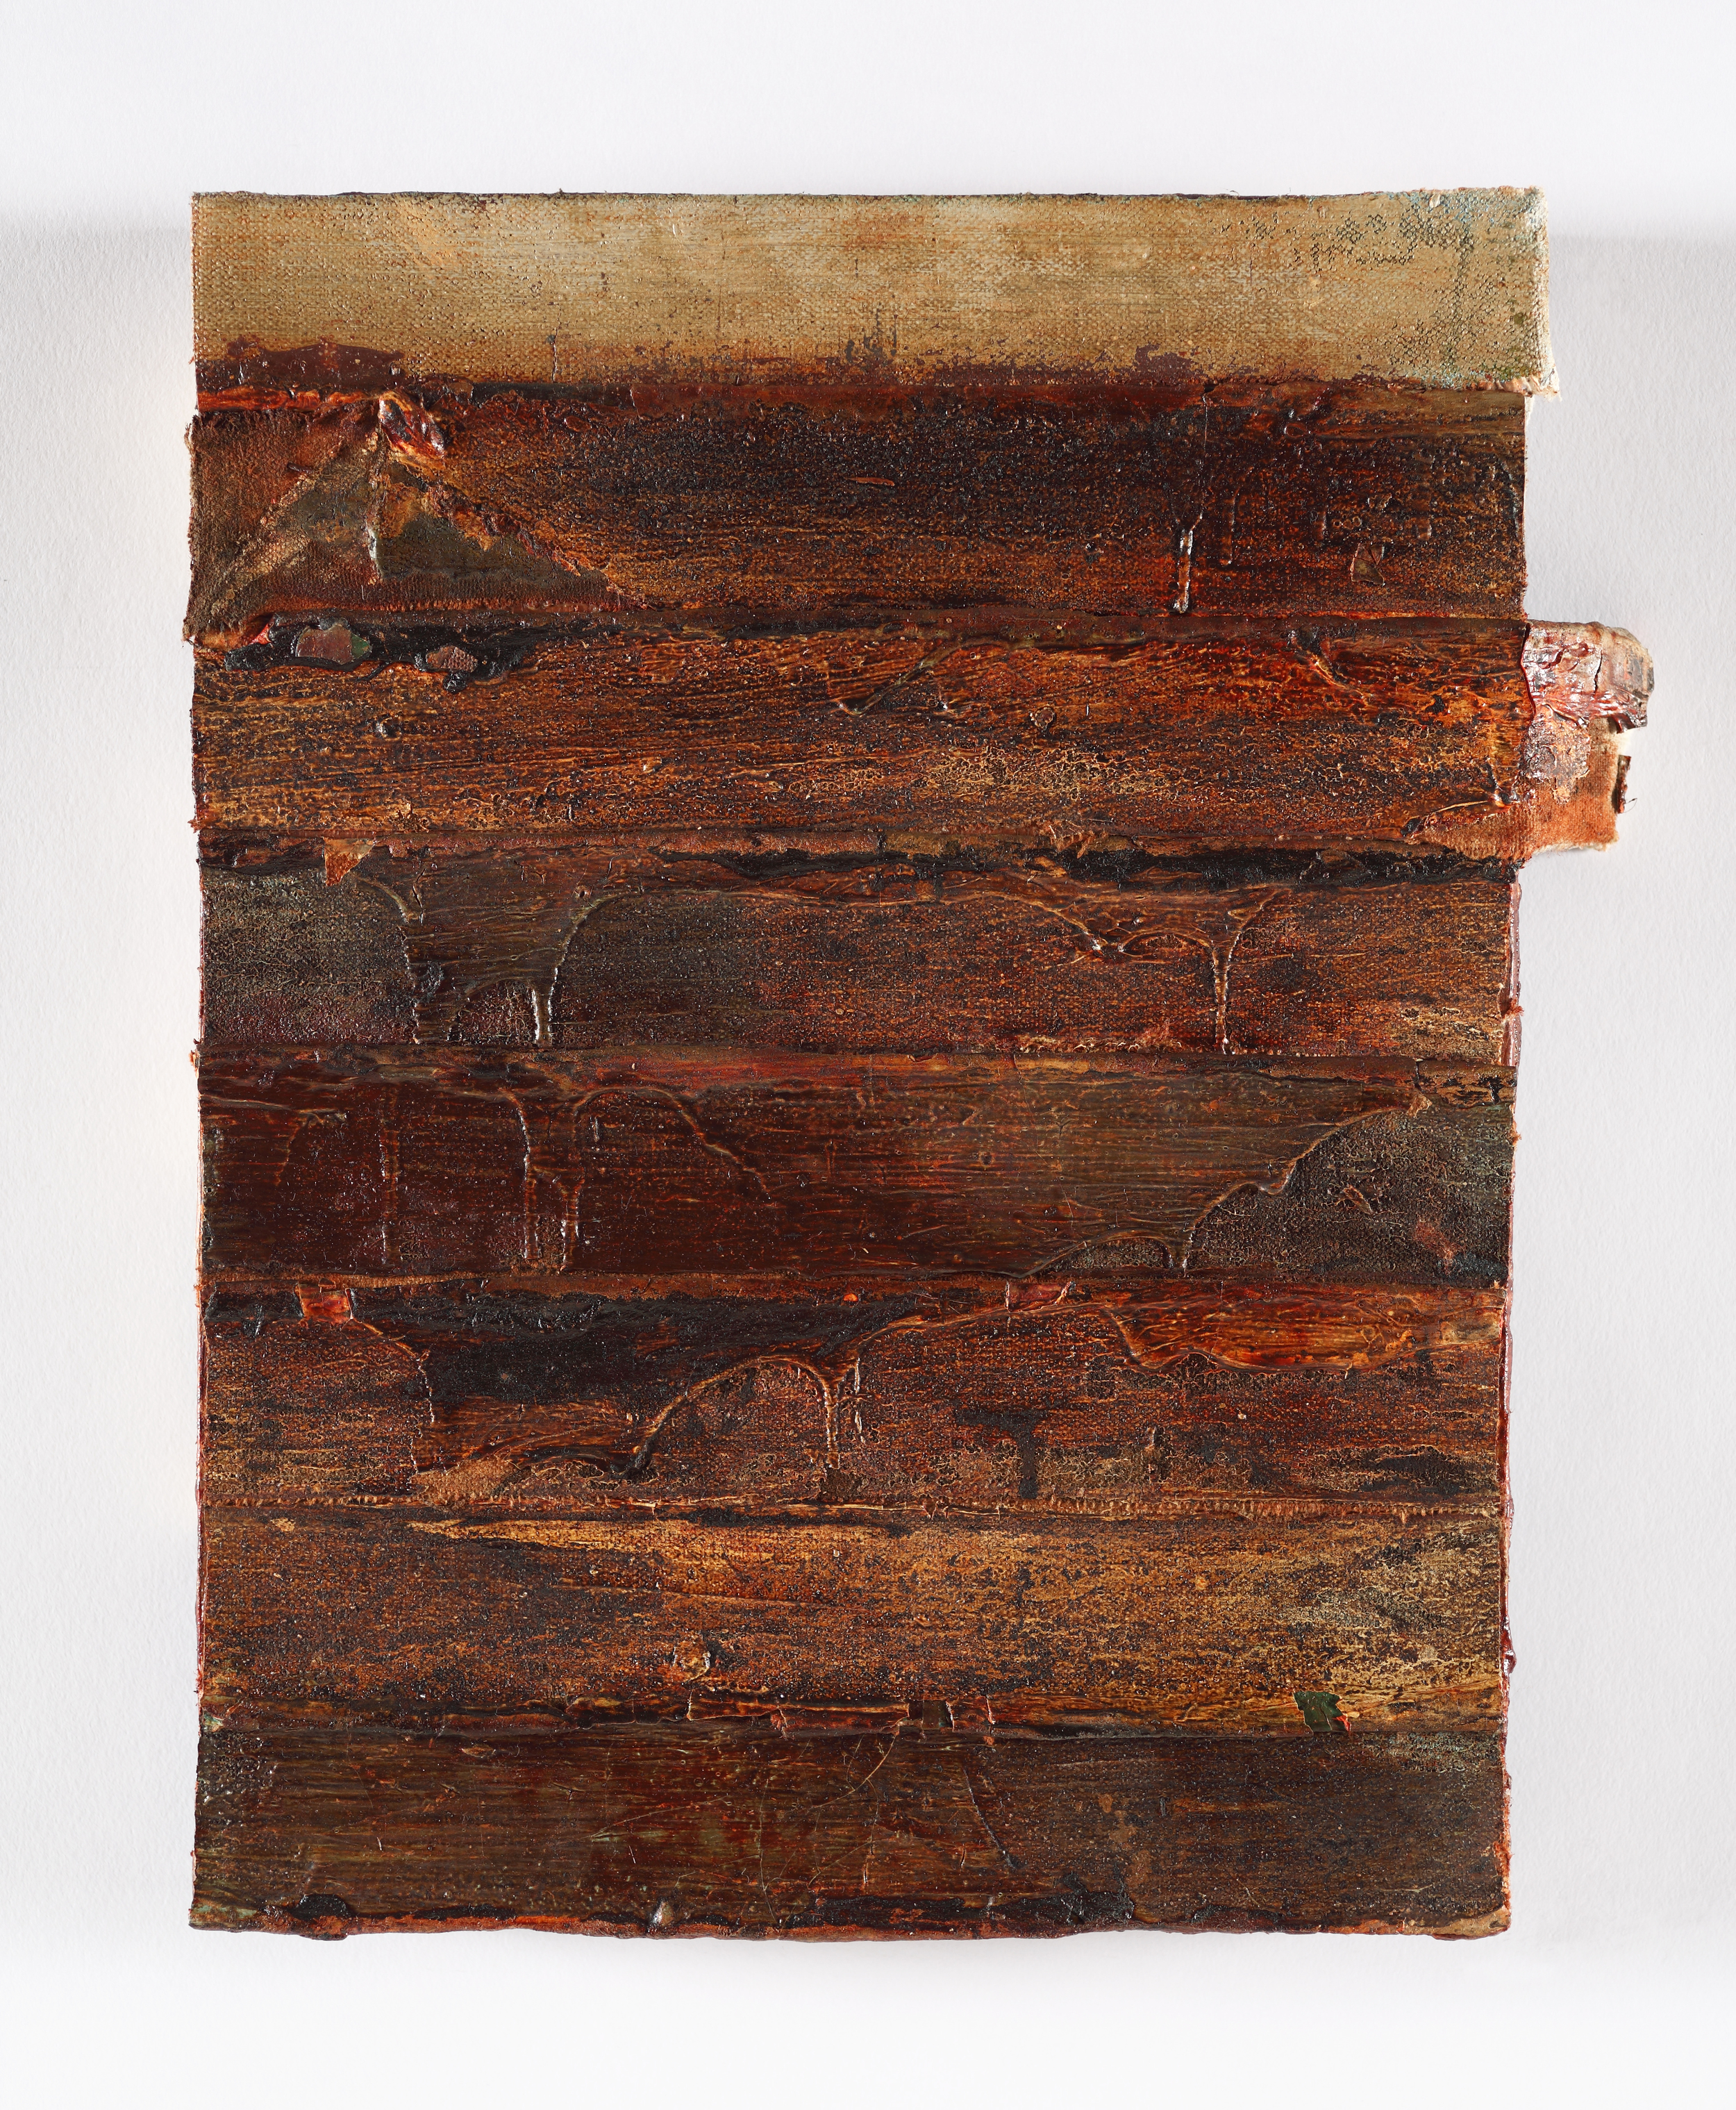   edges, (rustlines)   oil on salvaged canvas mounted on panel, 9x12", 2013 